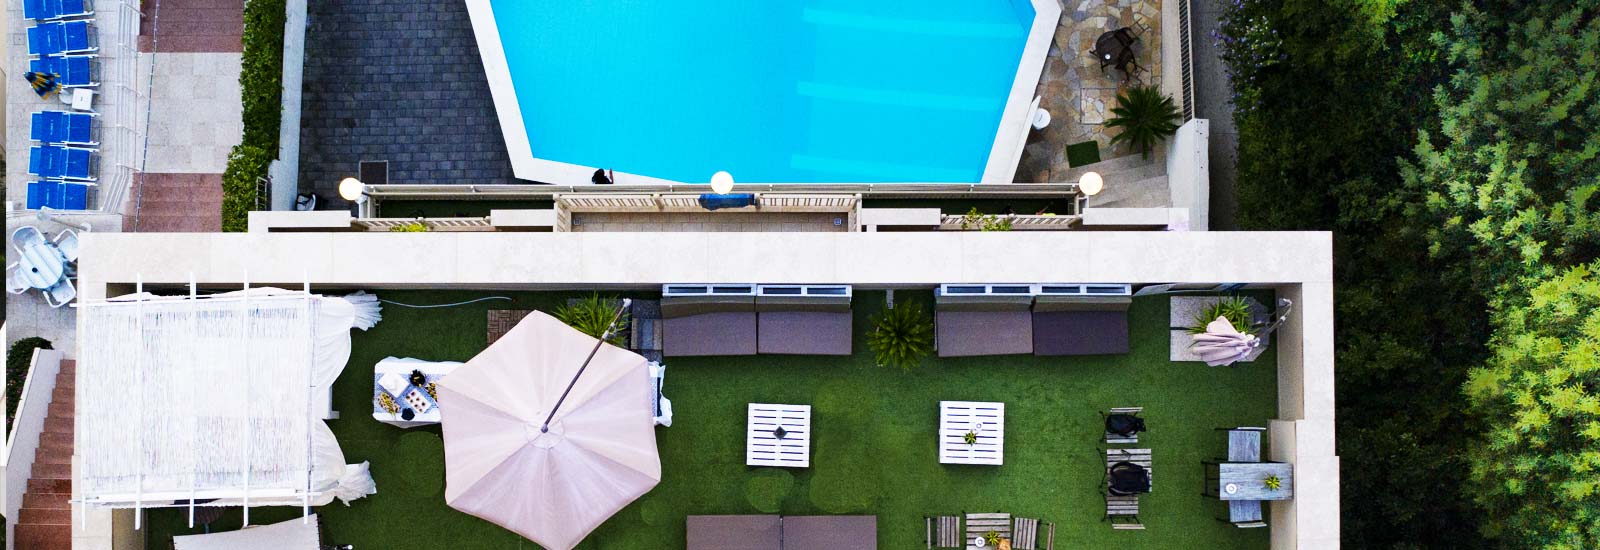 La terrazza wellness e la piscina